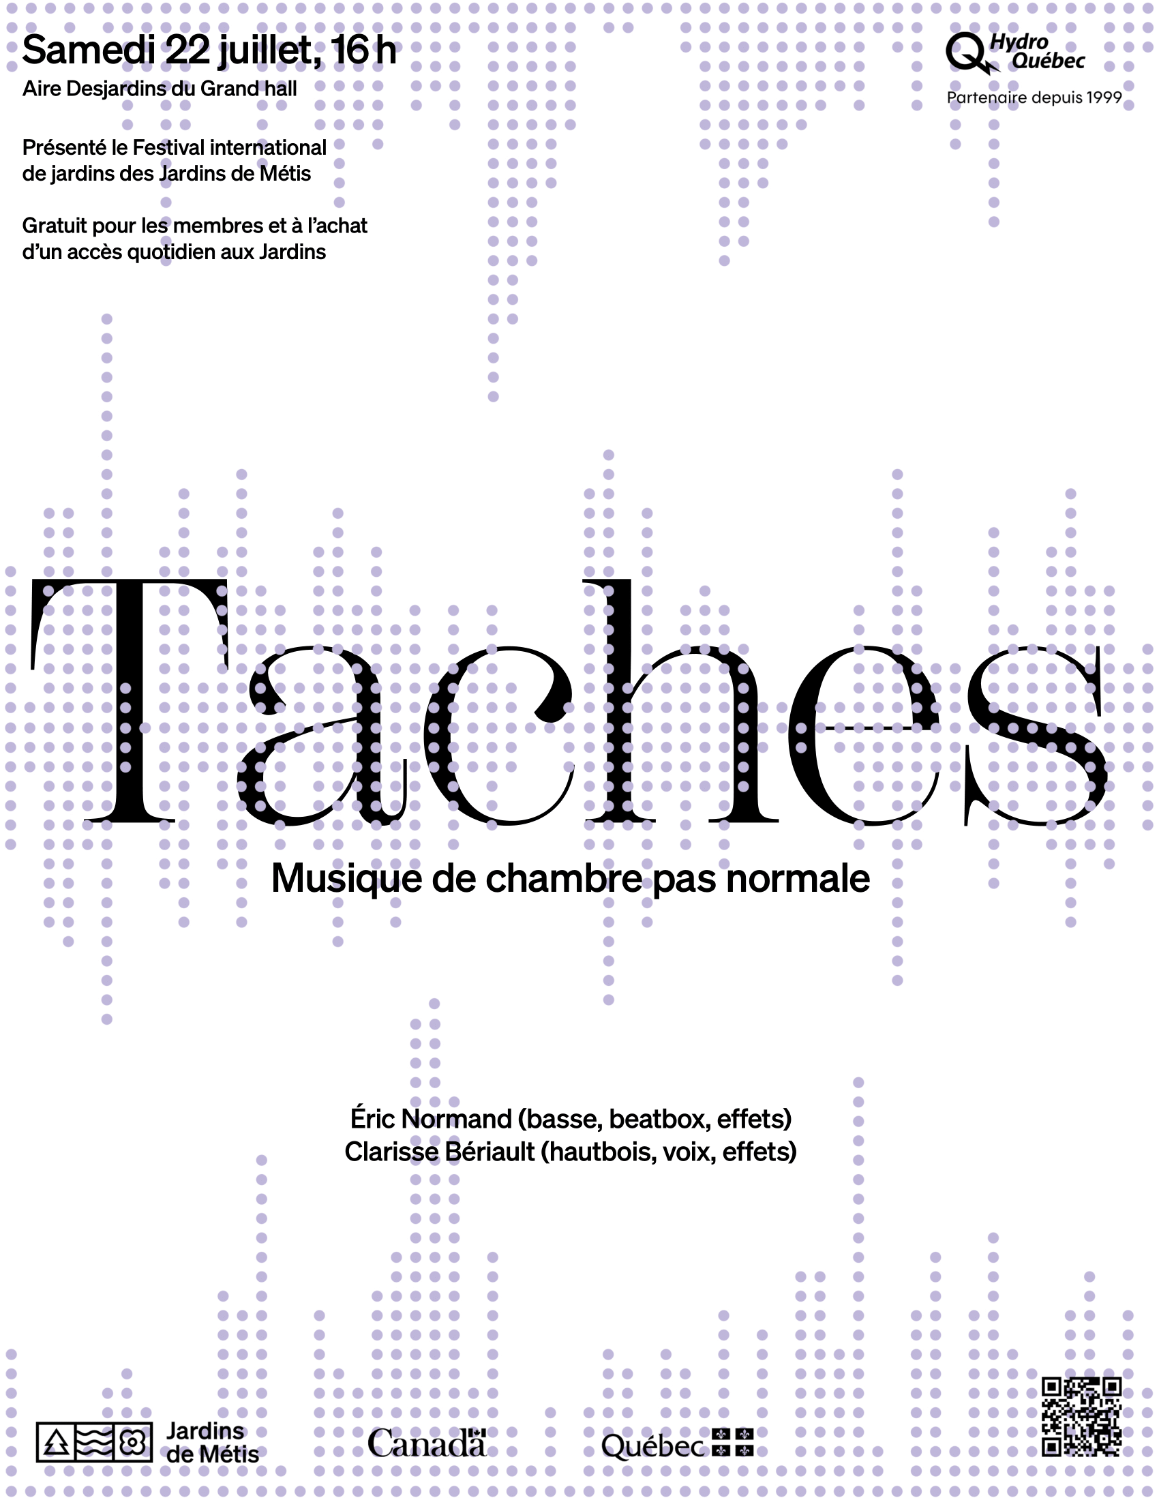 CONCERT | Taches (Éric Normand, basse, et Clarisse Bériault, hautbois), musique de chambre pas normale